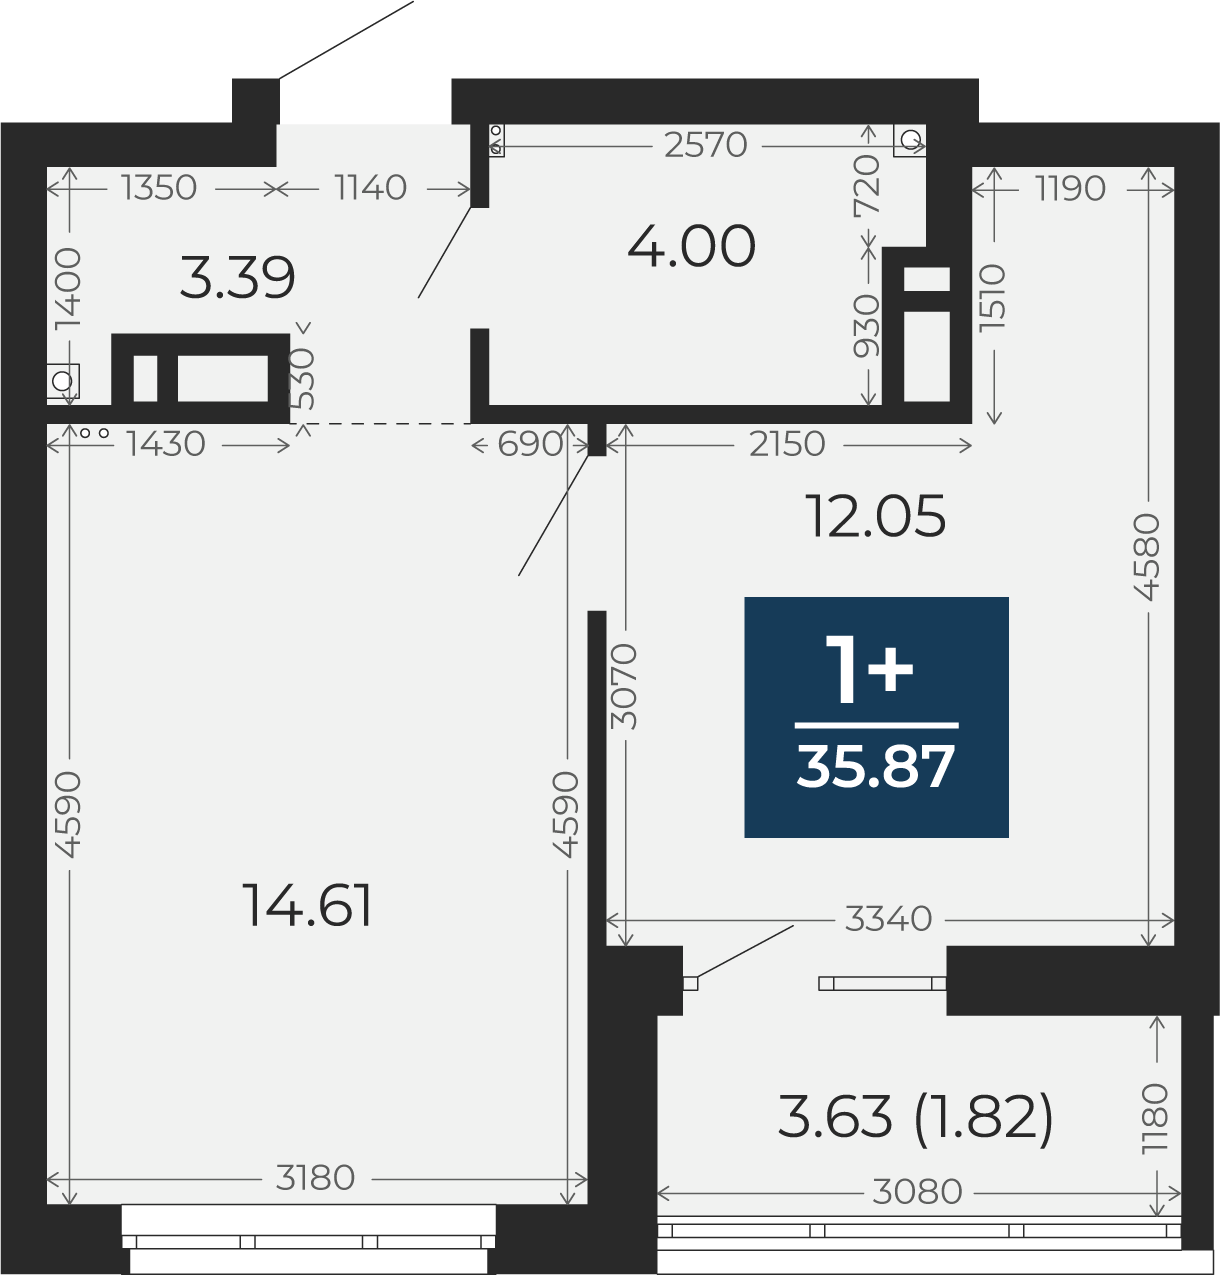 Квартира № 418, 1-комнатная, 35.87 кв. м, 13 этаж